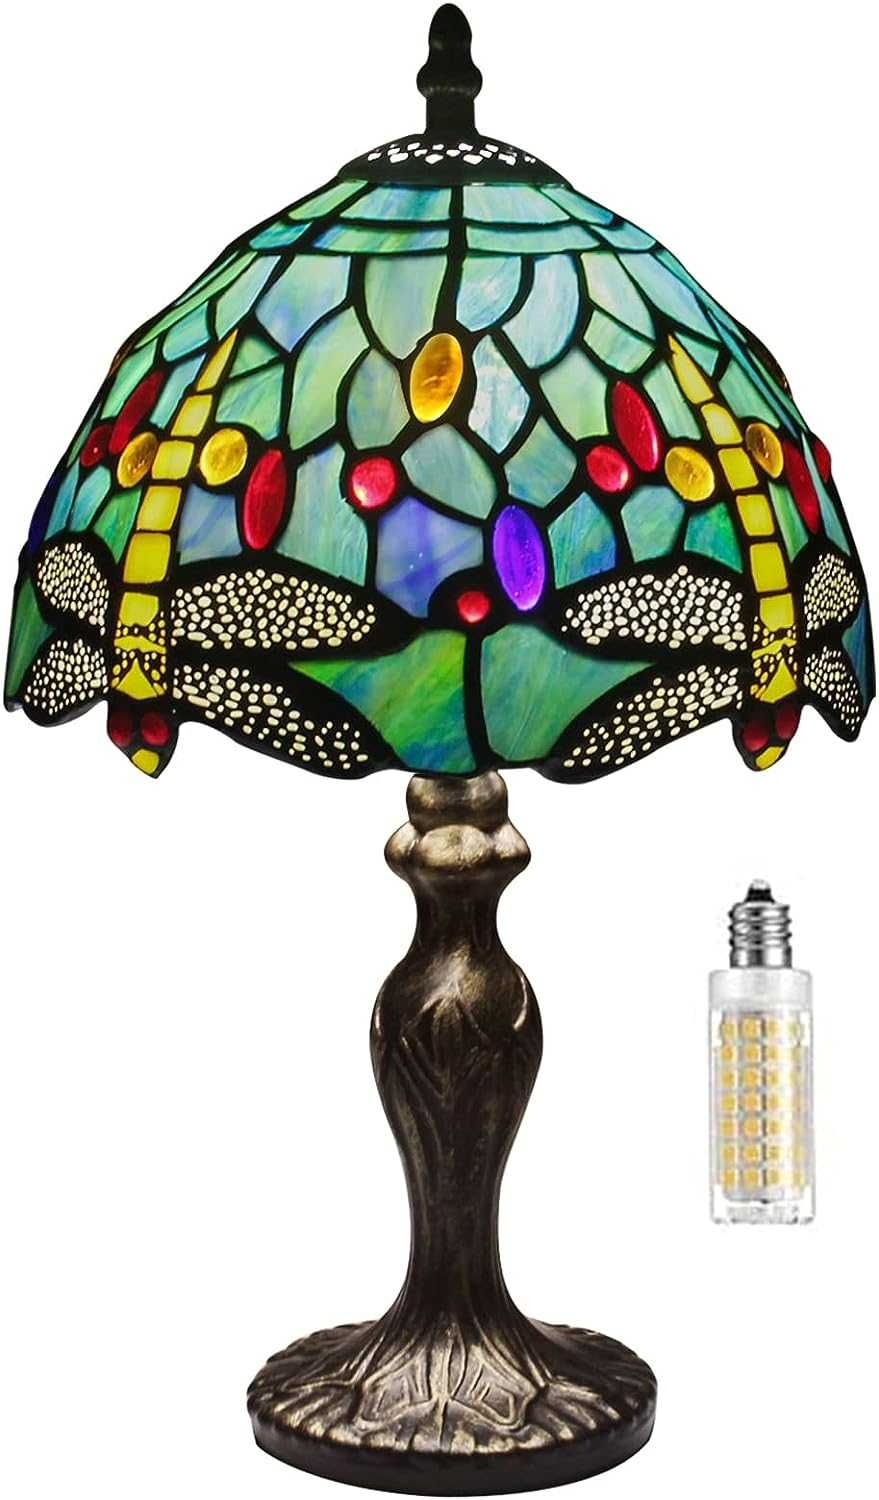 Lampa stołowa, witrażowa TIFFANY Style, ważka, 37cm, MIAOKE